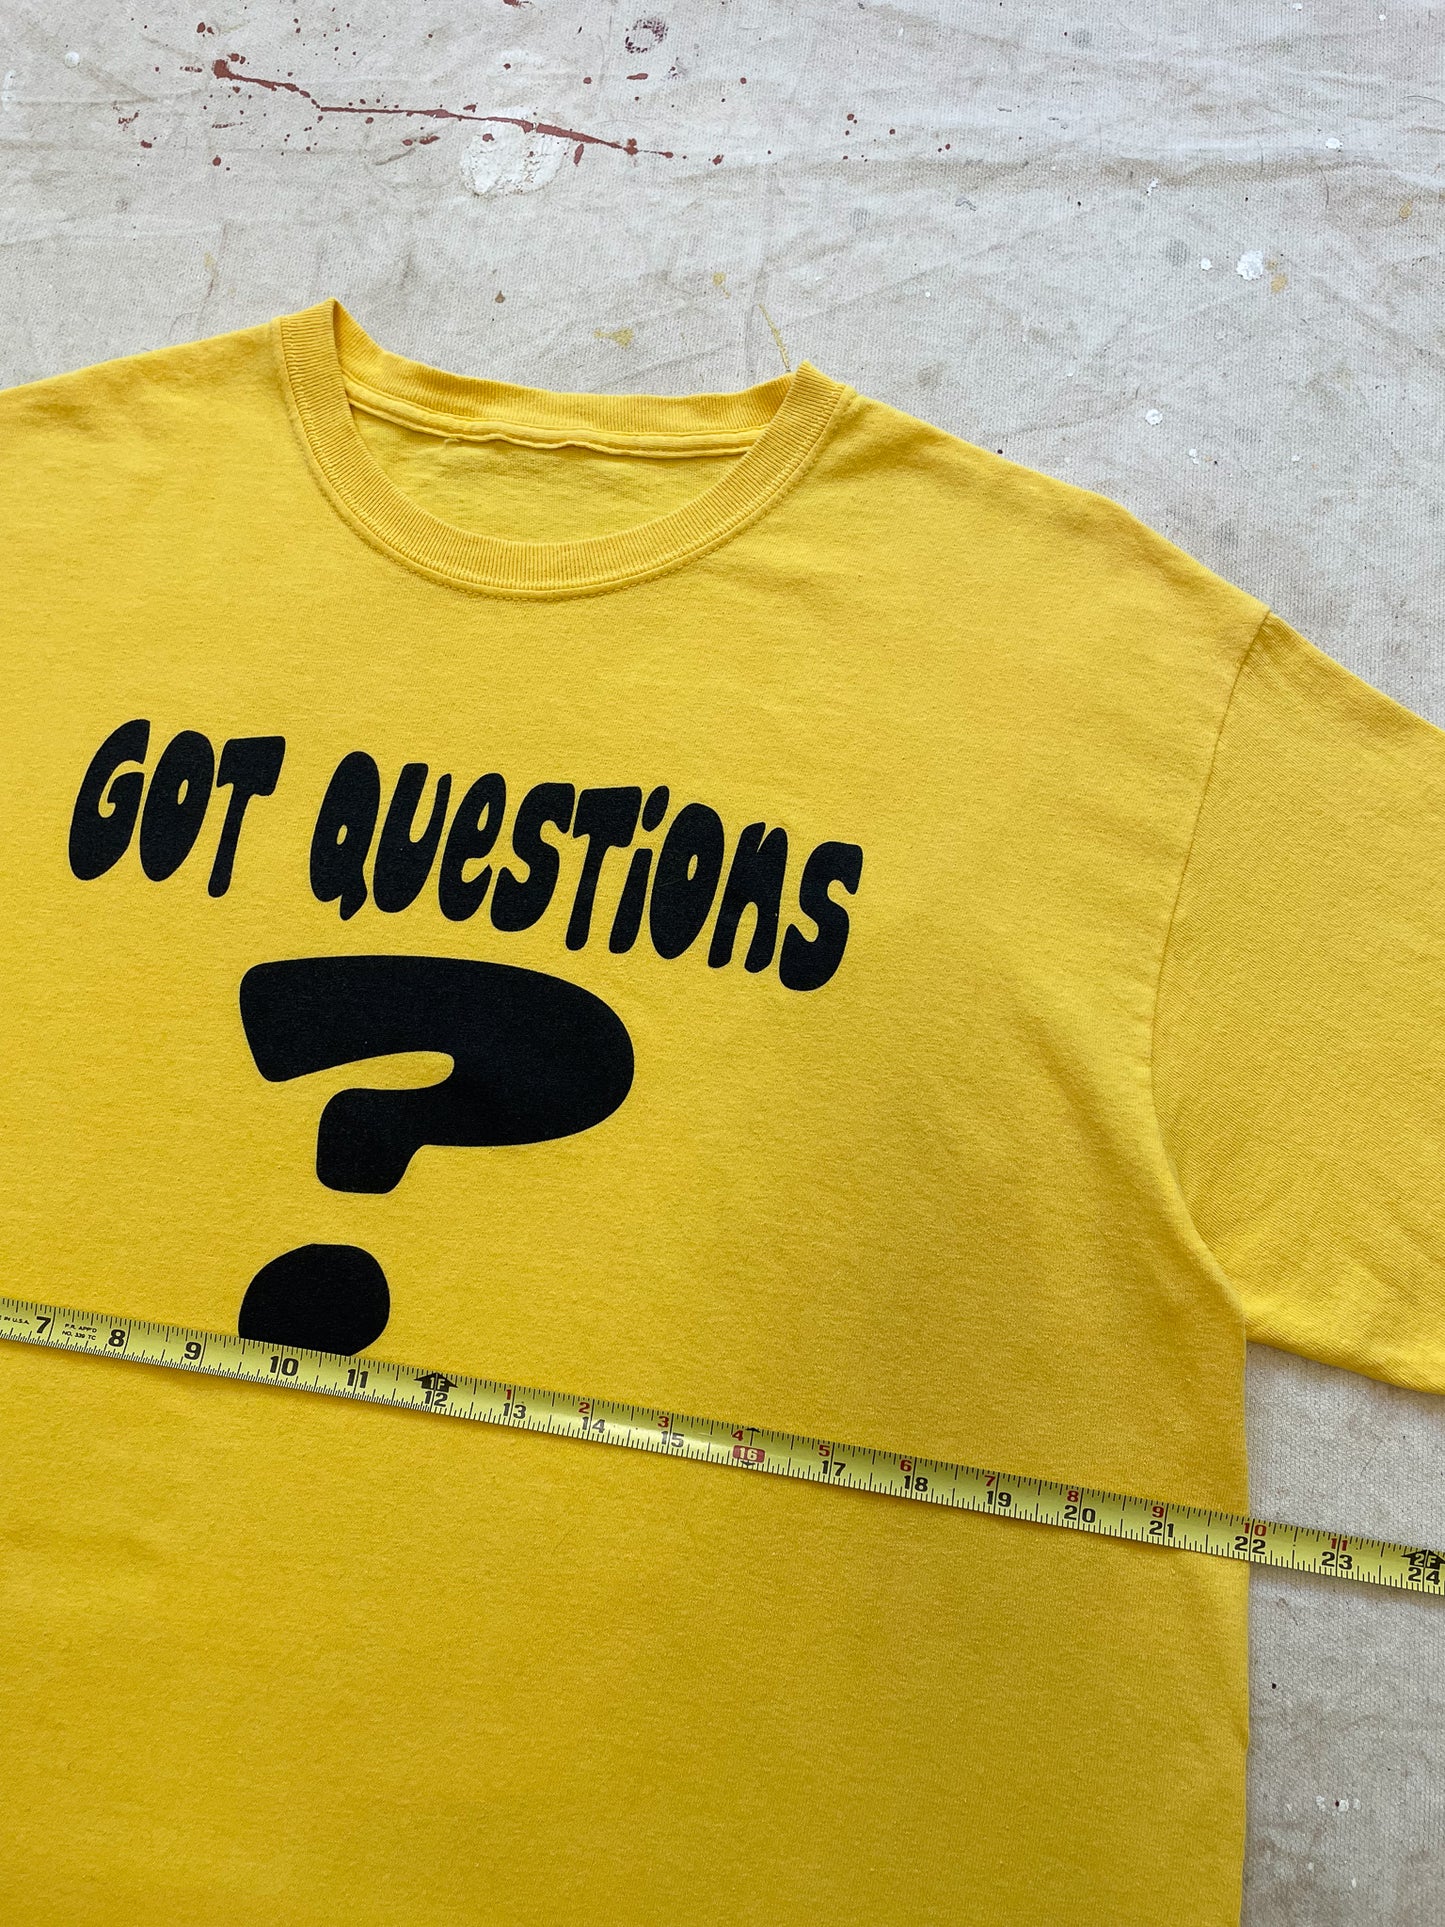 Got Questions? T-Shirt—[L]